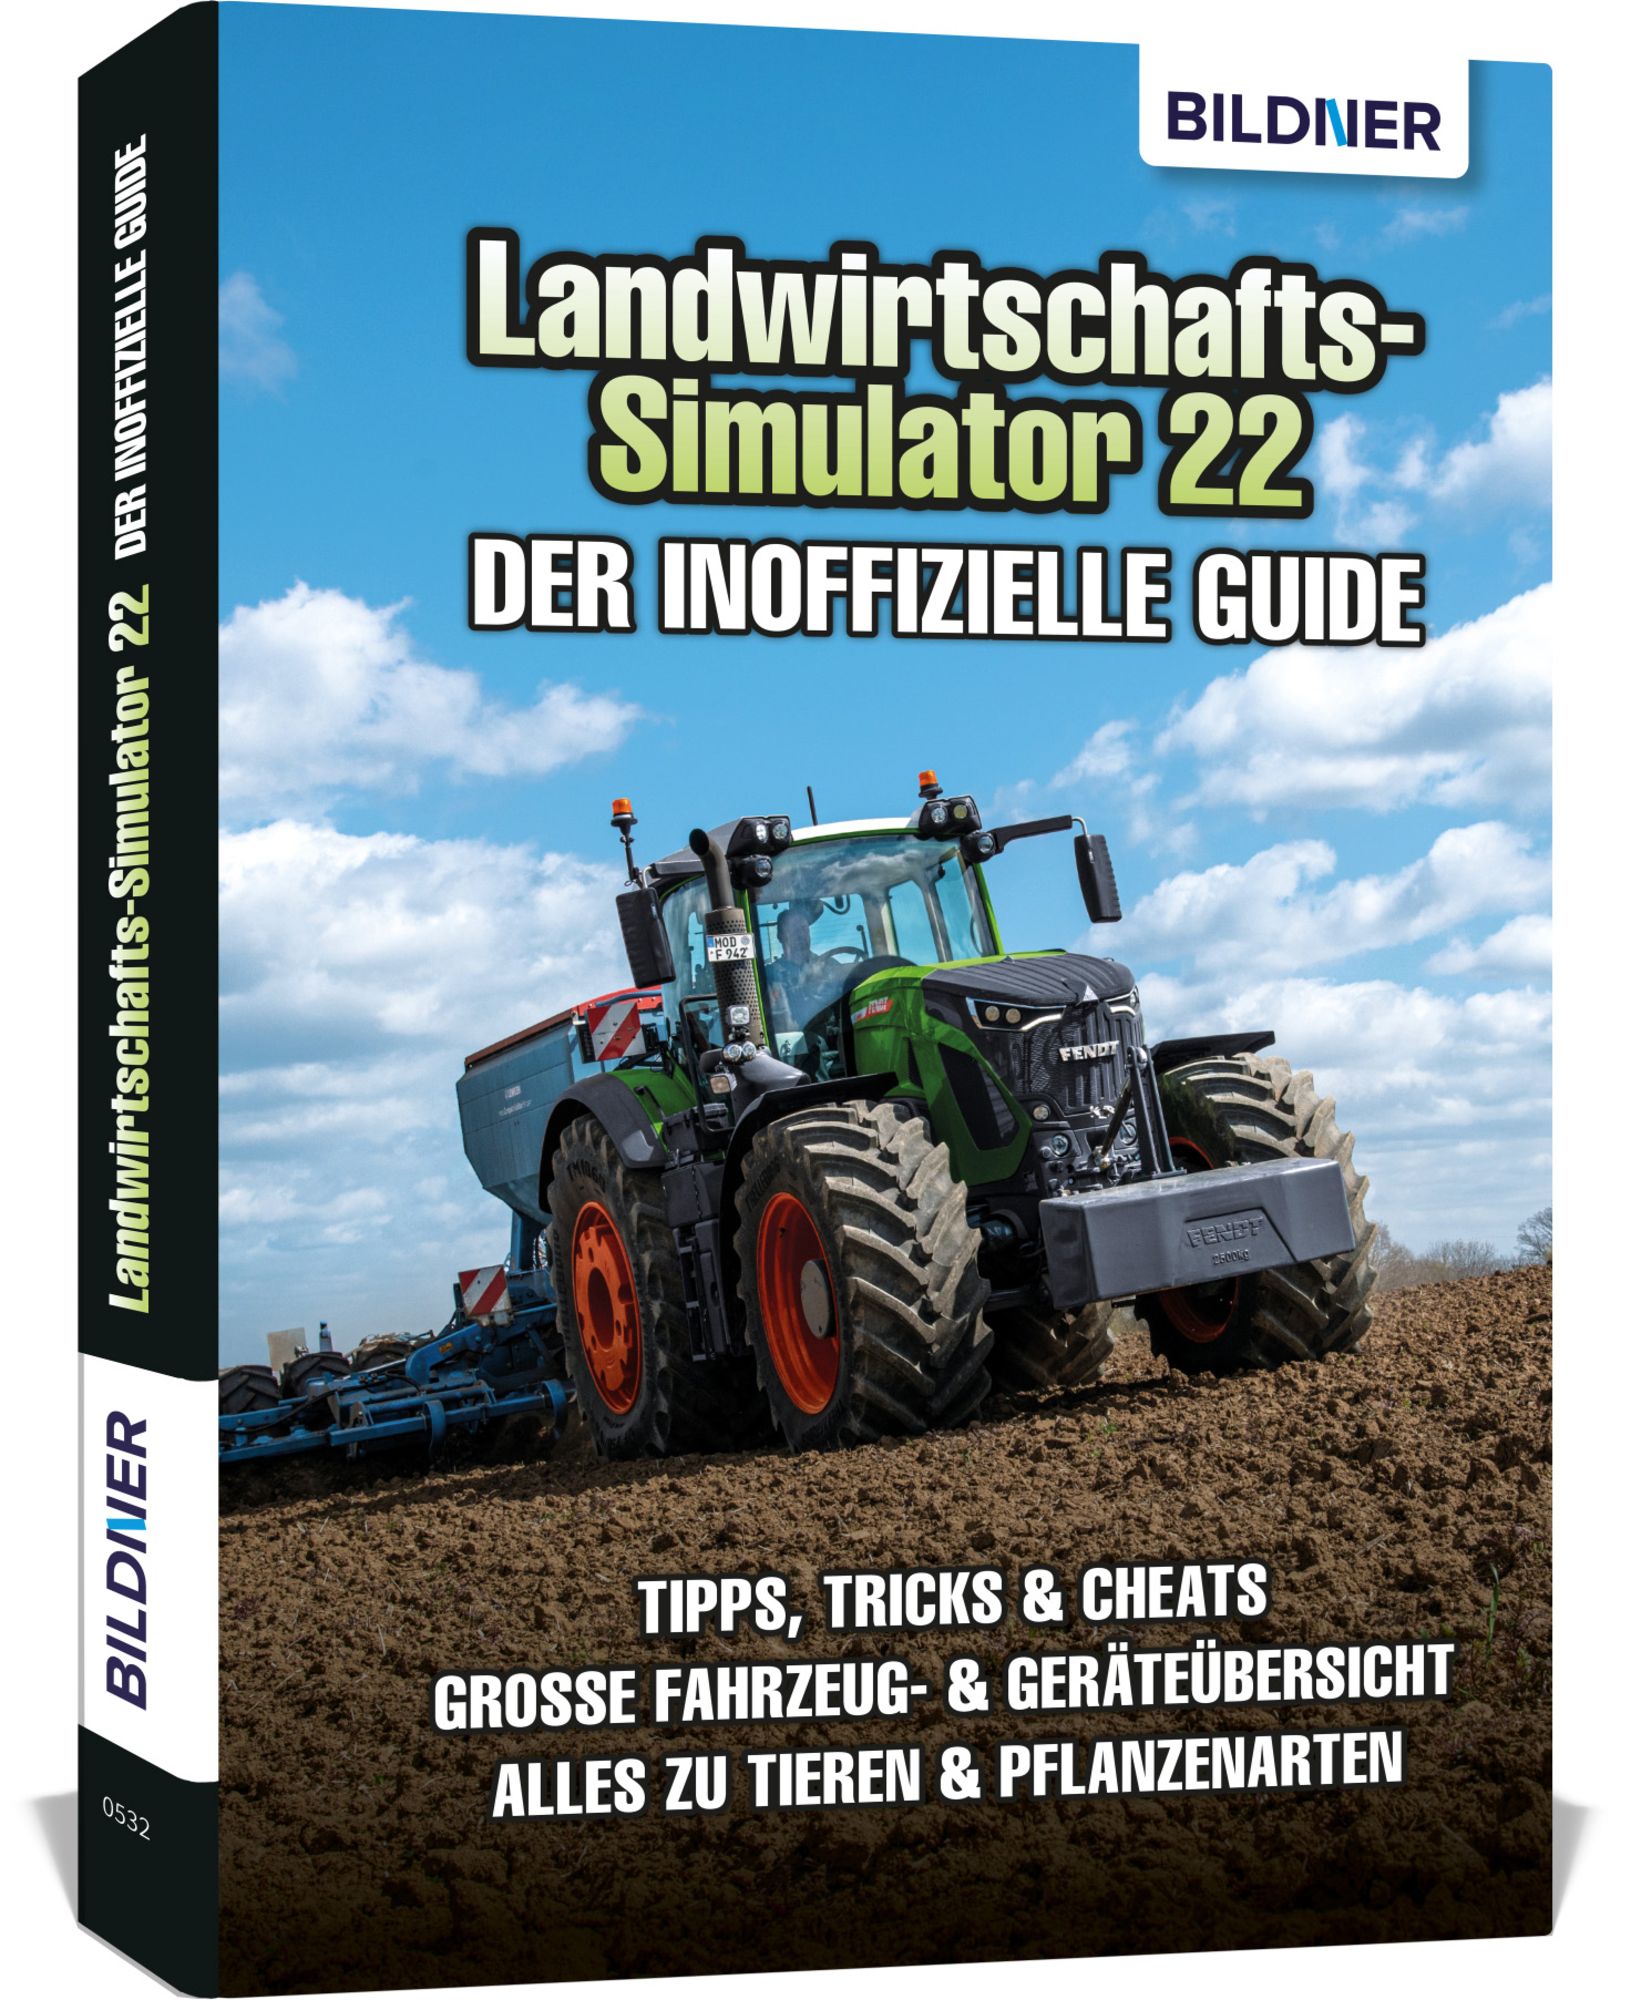 https://images.thalia.media/-/BF2000-2000/59f46d27847d44c1a077a403520f09d5/landwirtschaftssimulator-22-der-inoffizielle-guide-taschenbuch-andreas-zintzsch.jpeg